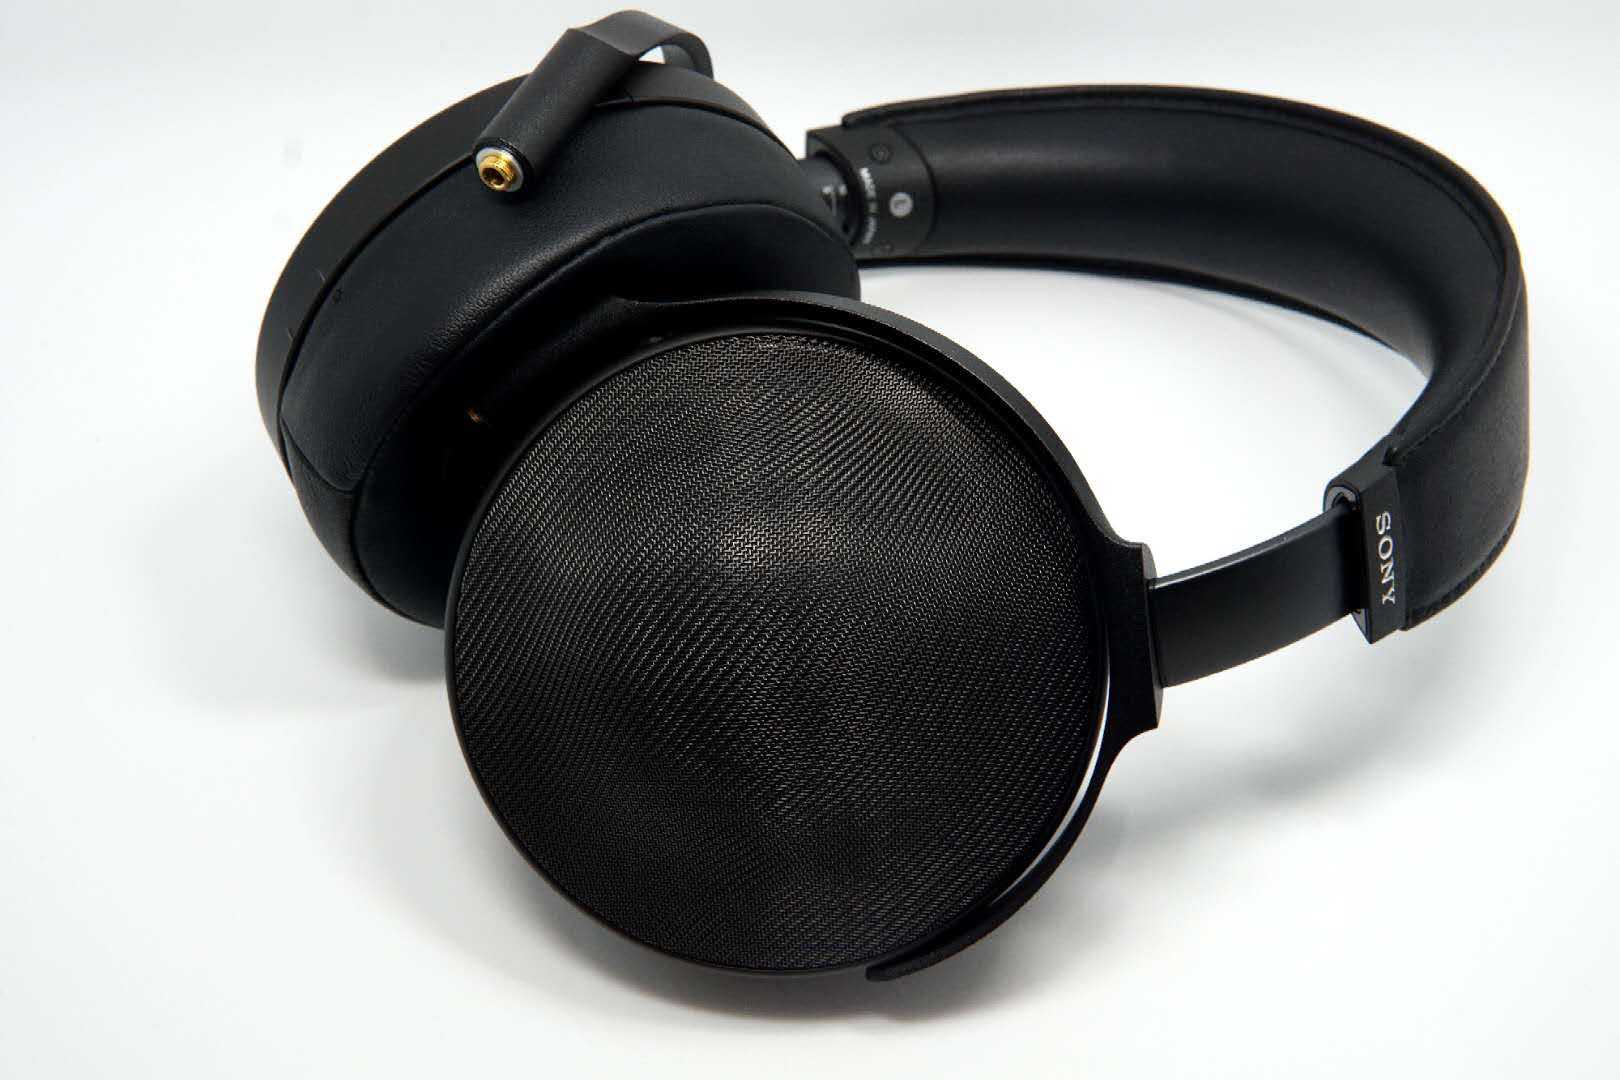 SONY 索尼 MDR-Z1R 旗艦 Z1R 耳罩式 耳機 | 金曲音響